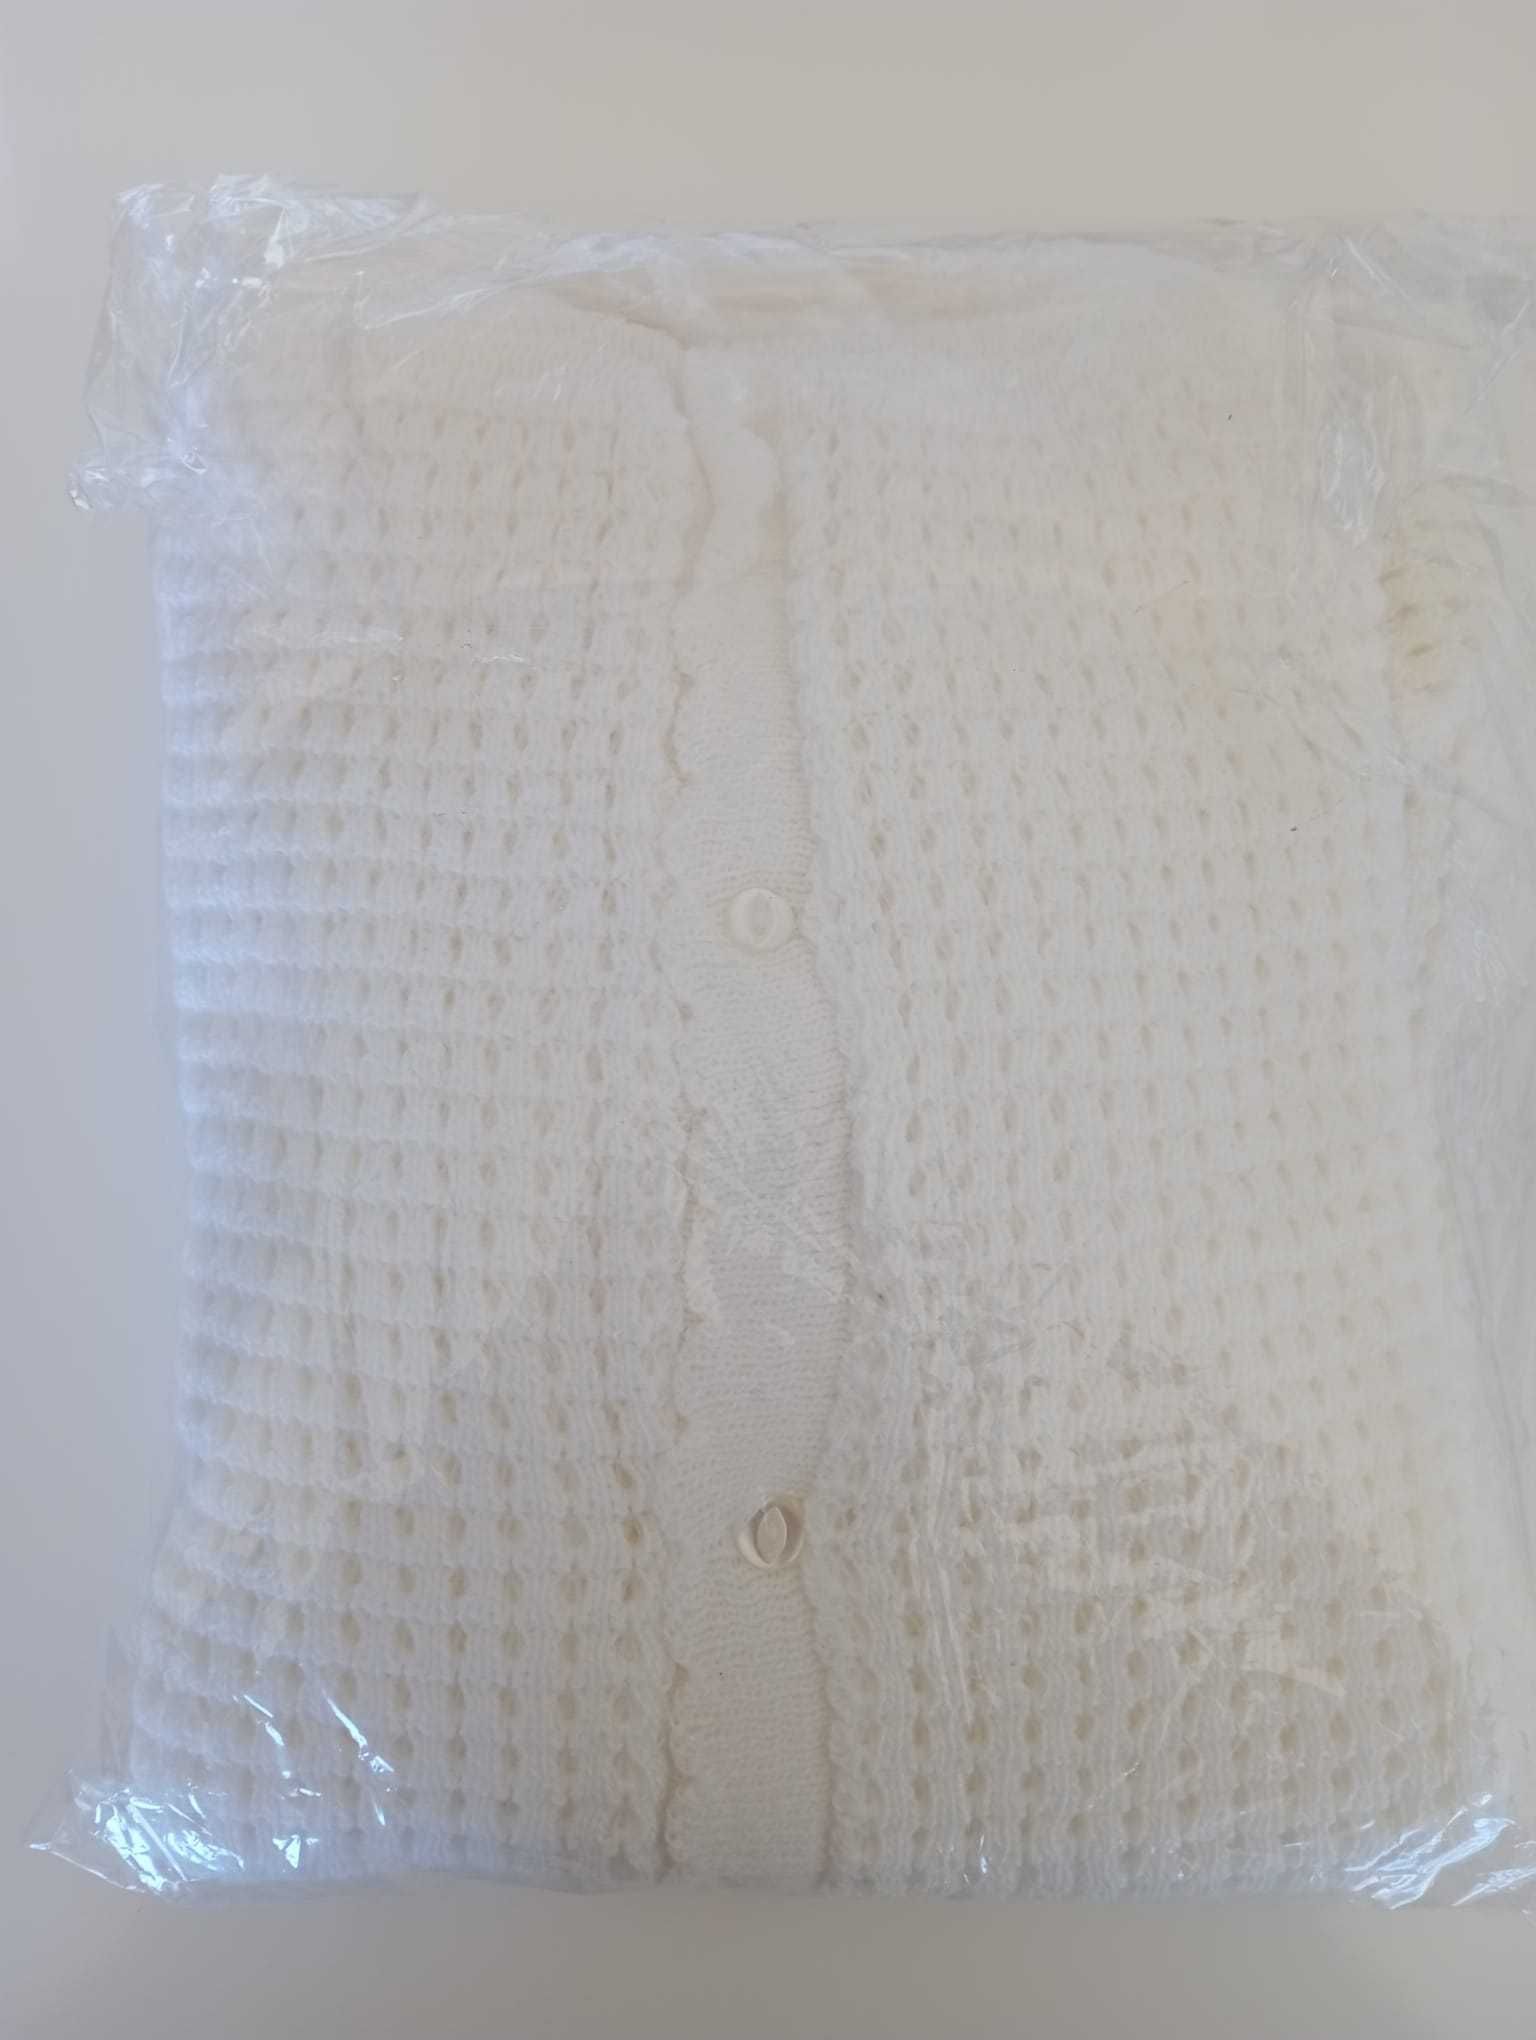 Casaco de Dormir Branco com fita na gola Tam Único NOVO